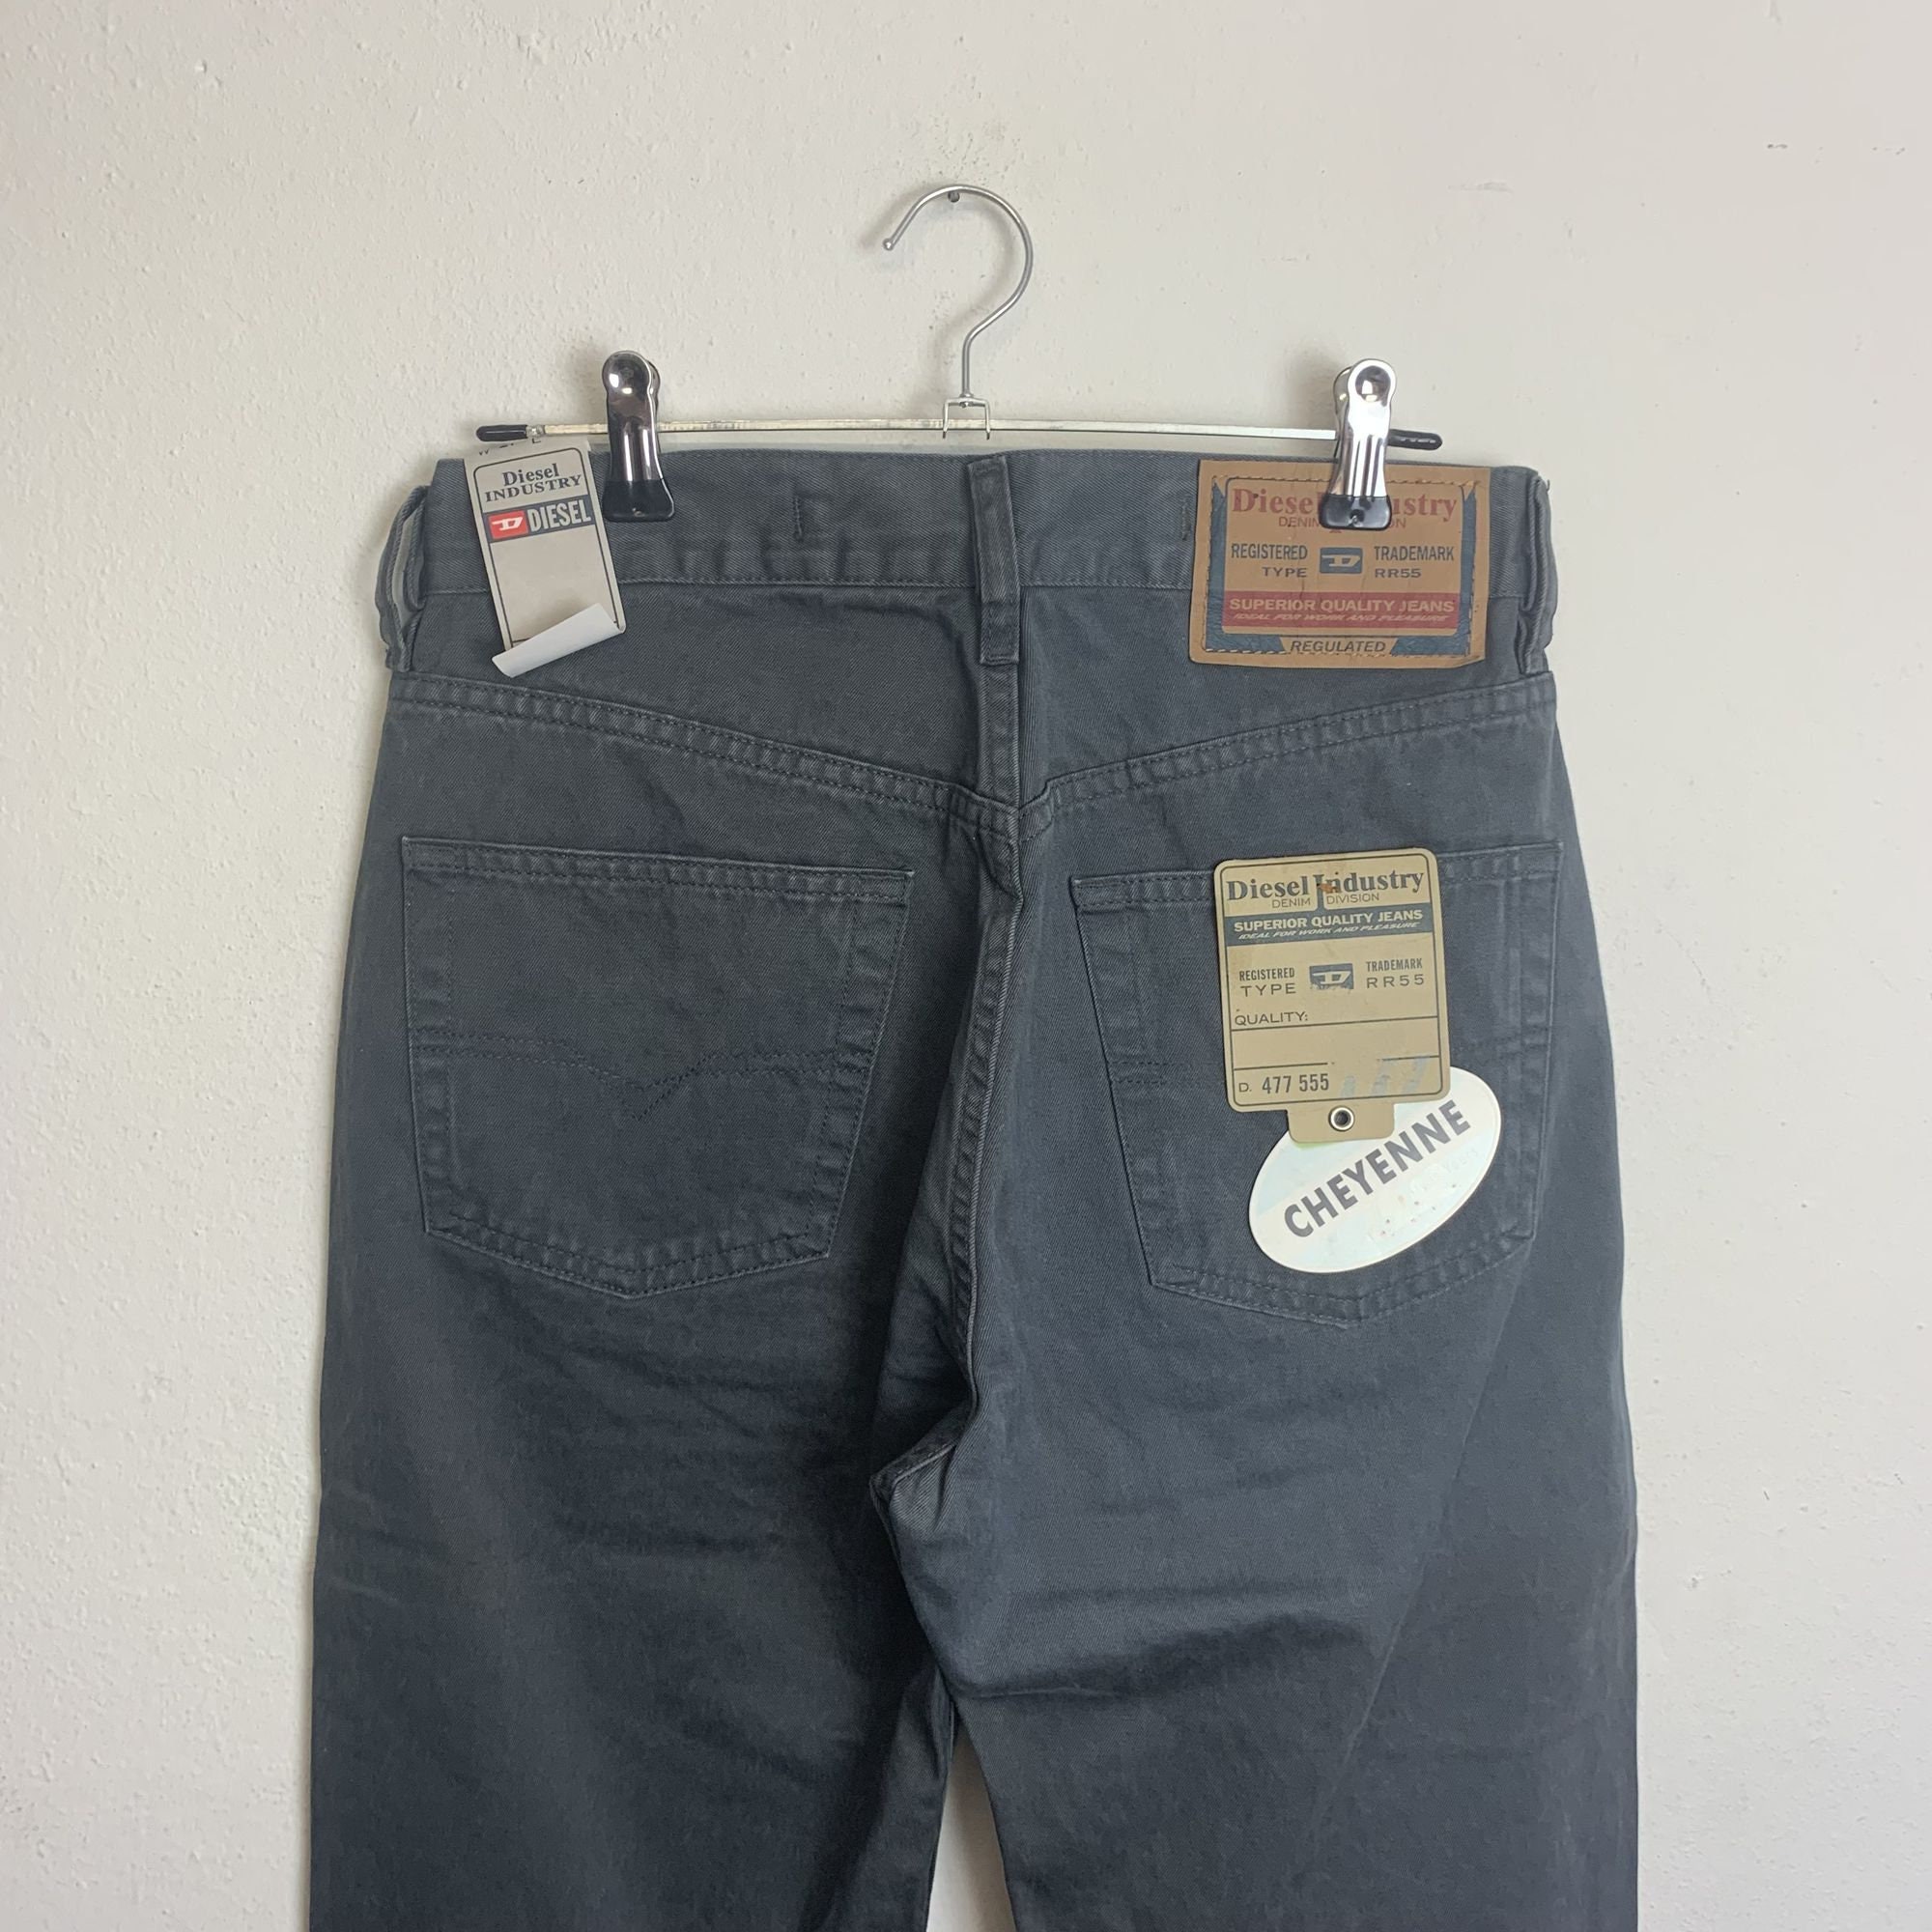 Vintage 80s 90s diesel Cheyenne Jeans Pants Grey - Etsy